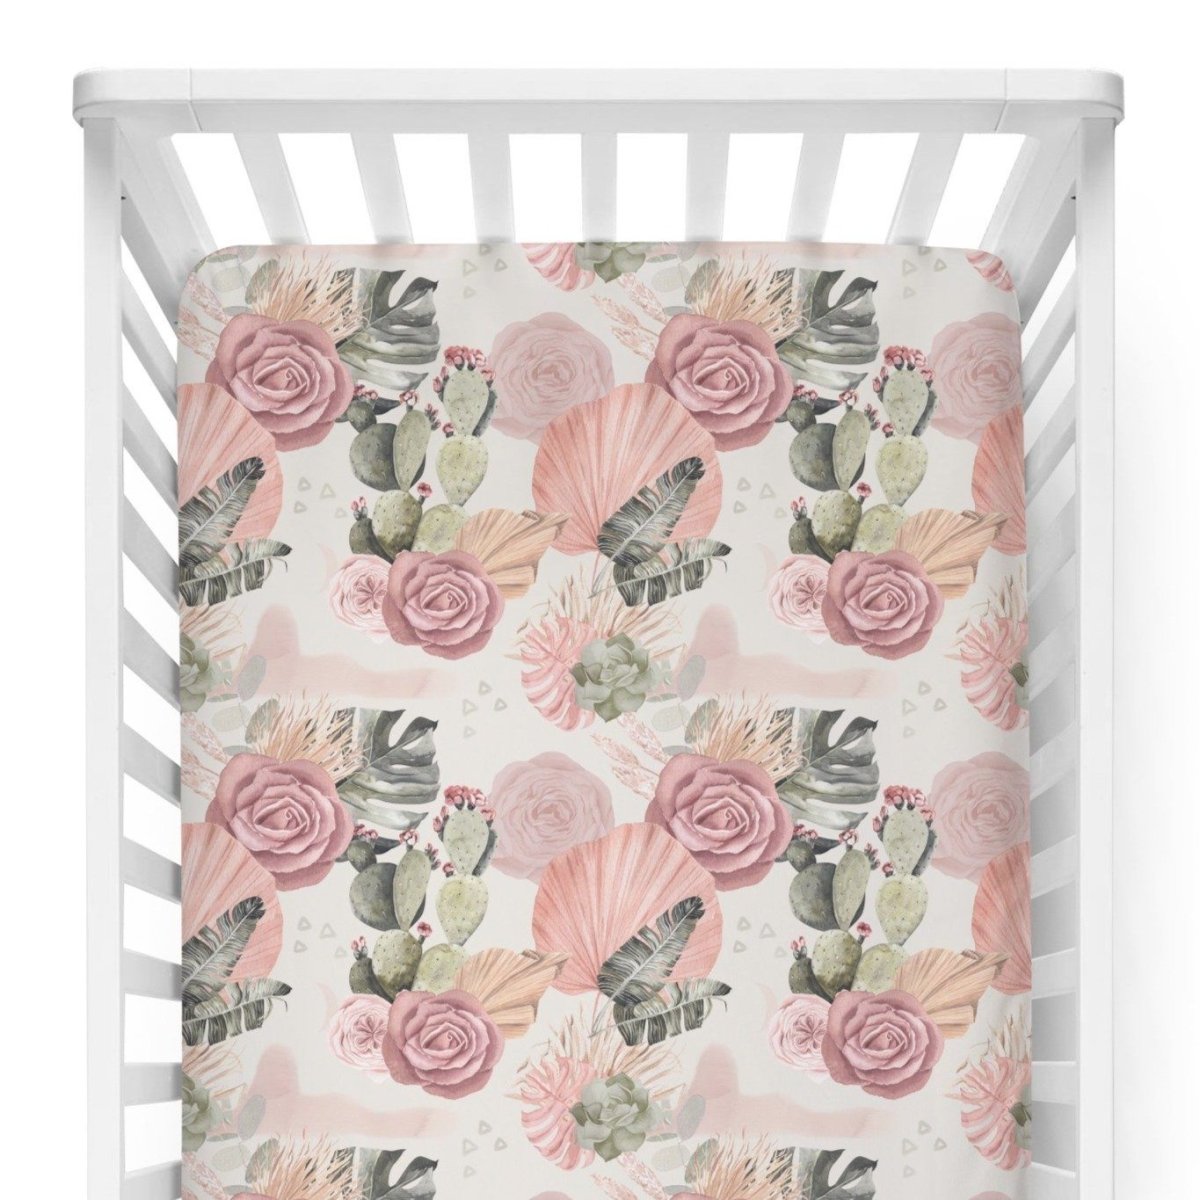 Desert Rose Crib Sheet - gender_girl, Theme_Boho, Theme_Floral